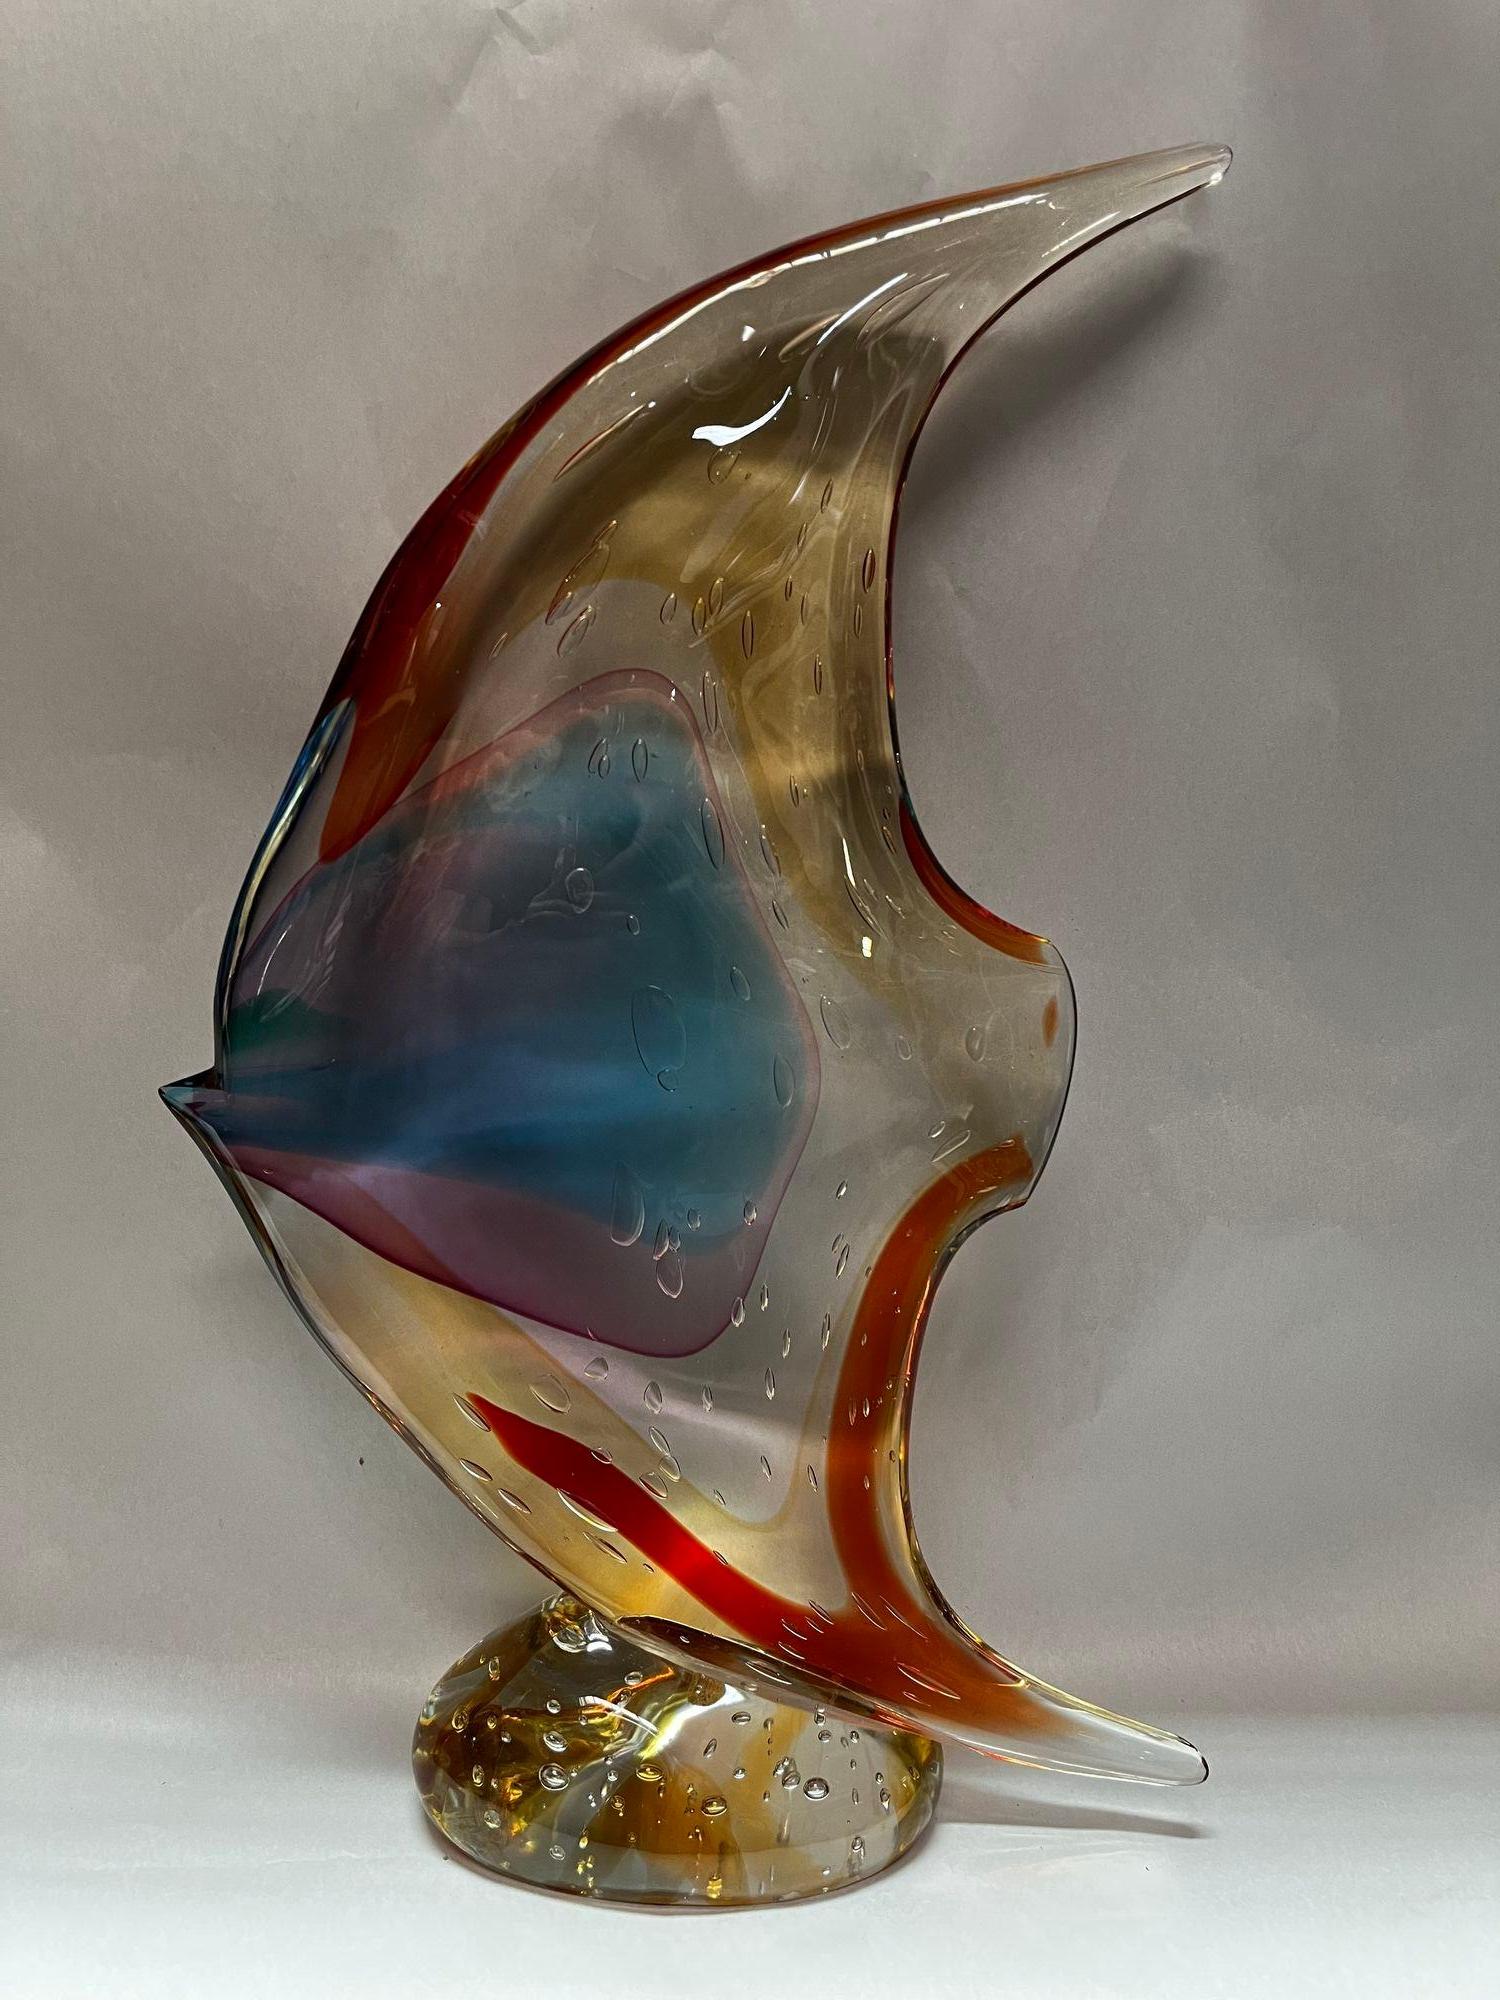 Sculpture de poisson en verre de Murano réalisée par Sergio Costantini pour Vetro Artistico Murano dans des tons bruns, rouges, ambrés, jaunes et bleus.
Fabriqué en Italie, 20e siècle (avec autocollant et signature)
Dimensions : 20 